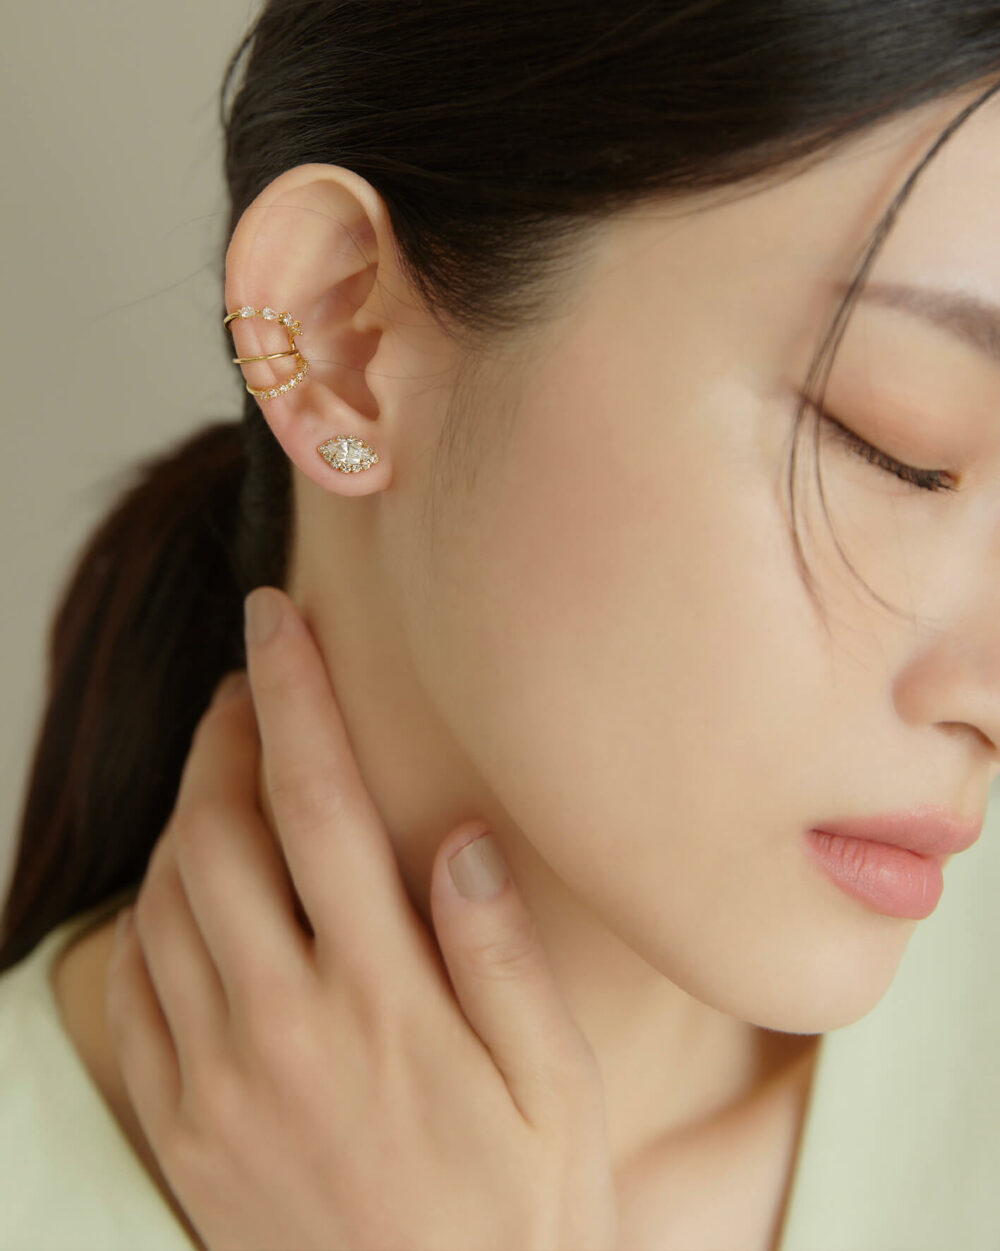 Eco安珂,韓國飾品,韓國耳環,韓國耳骨夾,韓國耳扣,耳夾式耳環,磁鐵水滴耳環,磁吸式耳環,無耳洞耳環